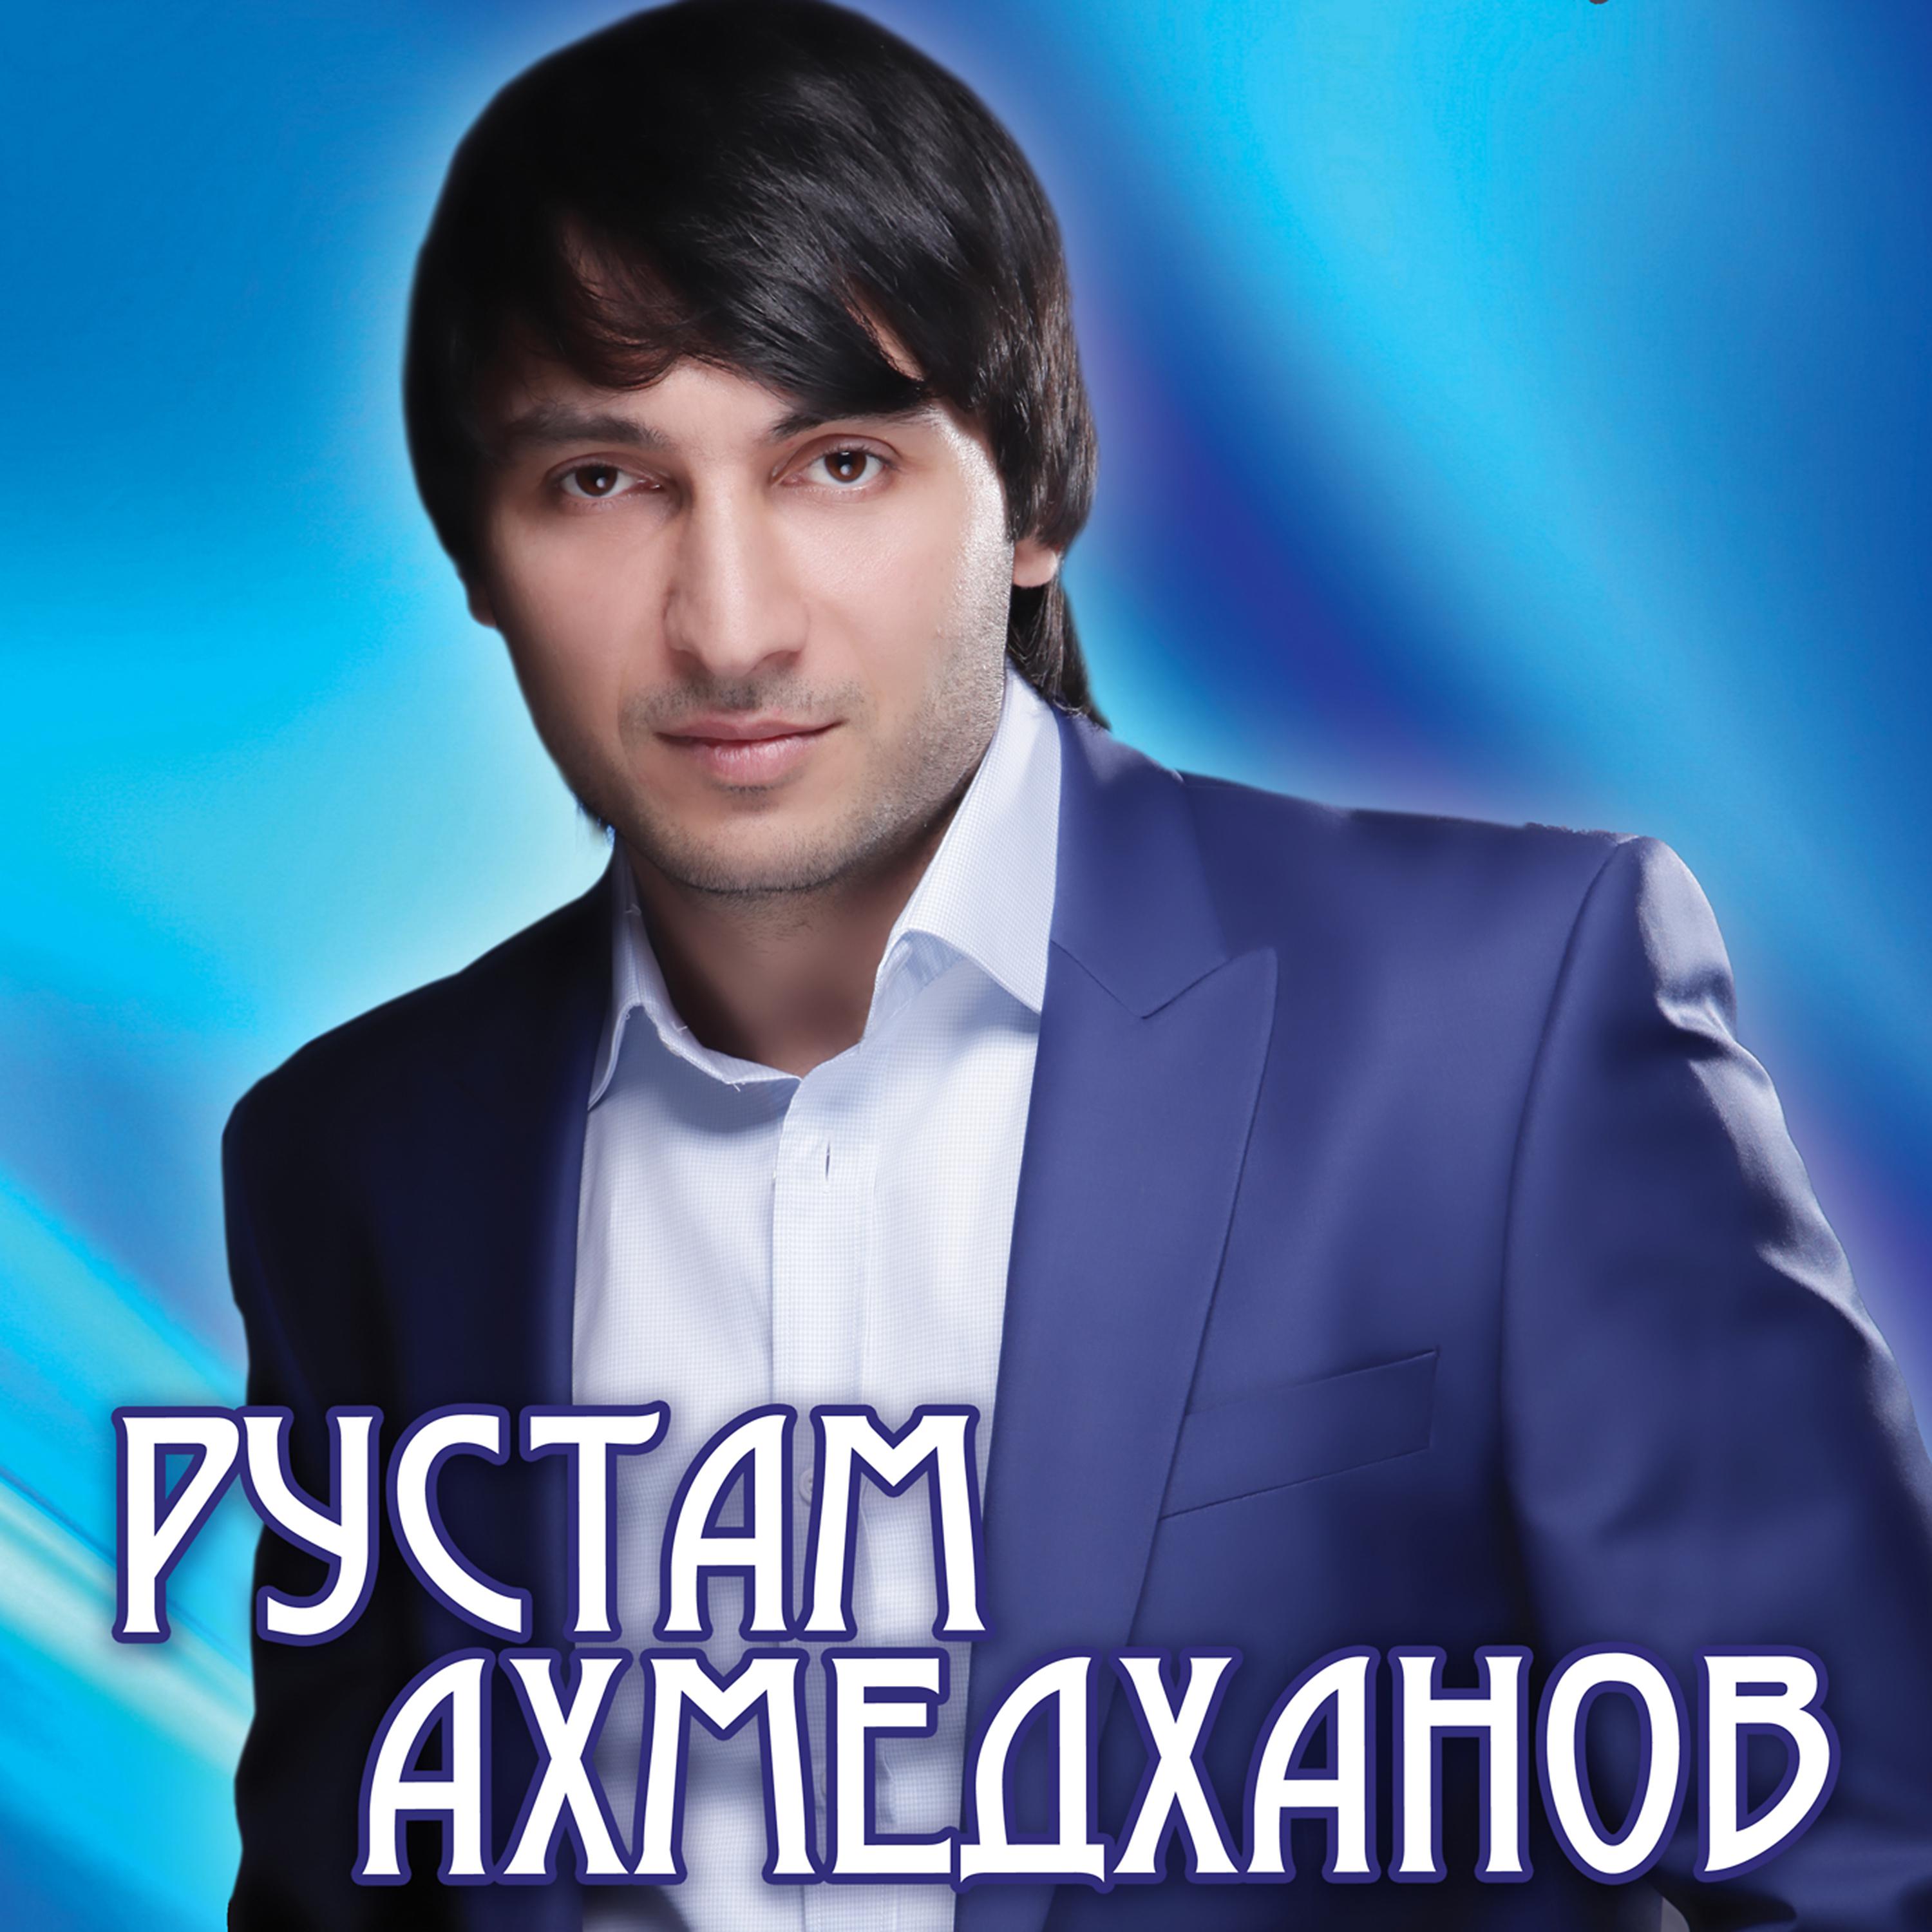 Лучший шансон кавказа. Кумыкский певец Ахмедханов.